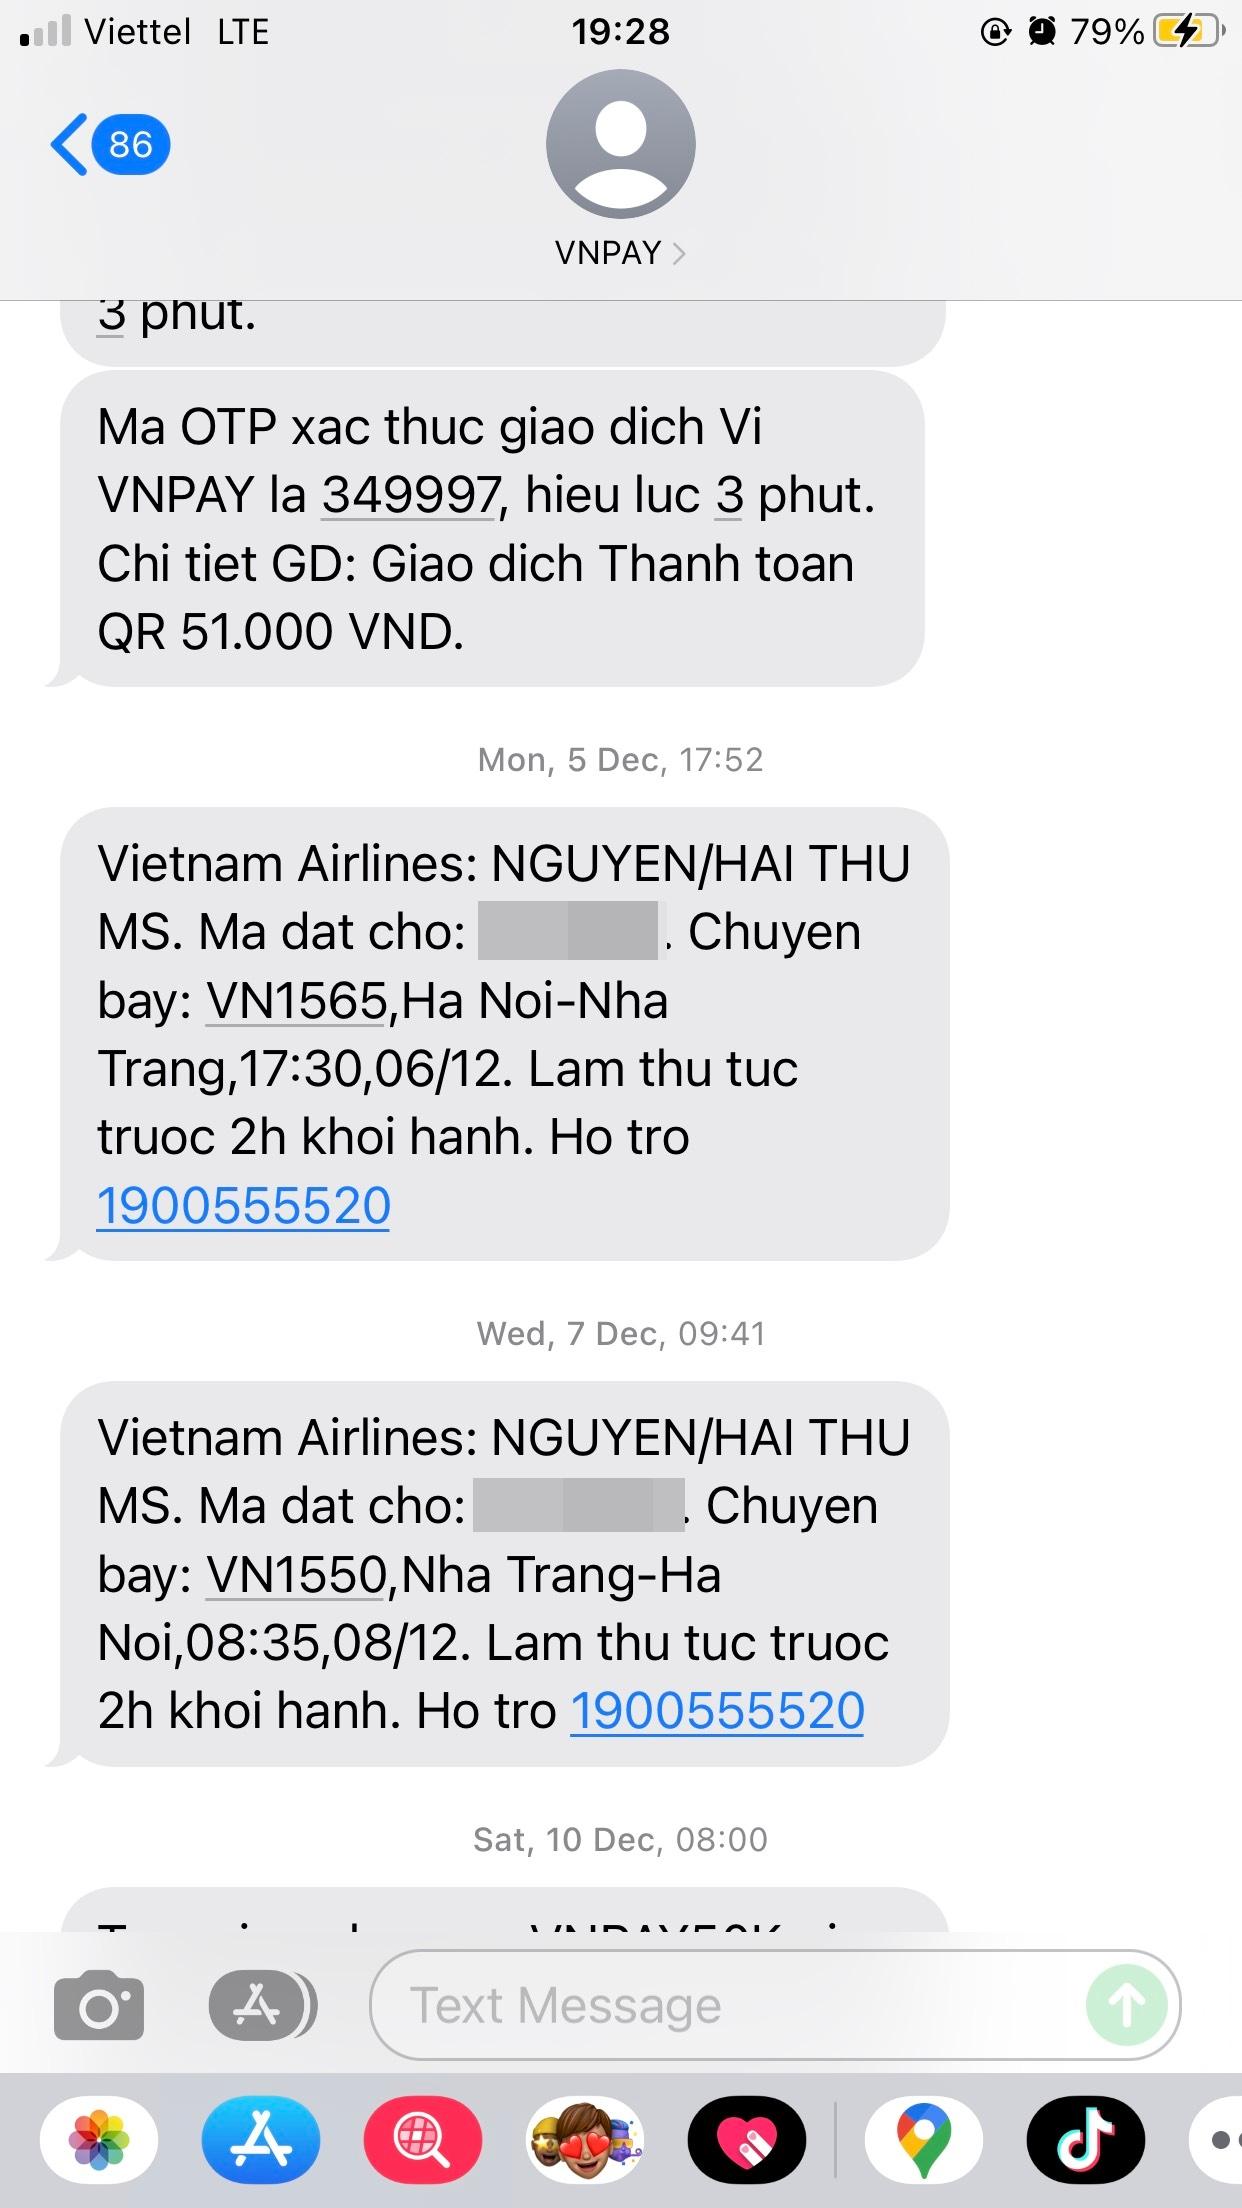 Khách hàng sẽ nhận được tin nhắn xác nhận mãcode qua số điện thoại đã điền khi đặt vé máy bay qua ví VNPAY